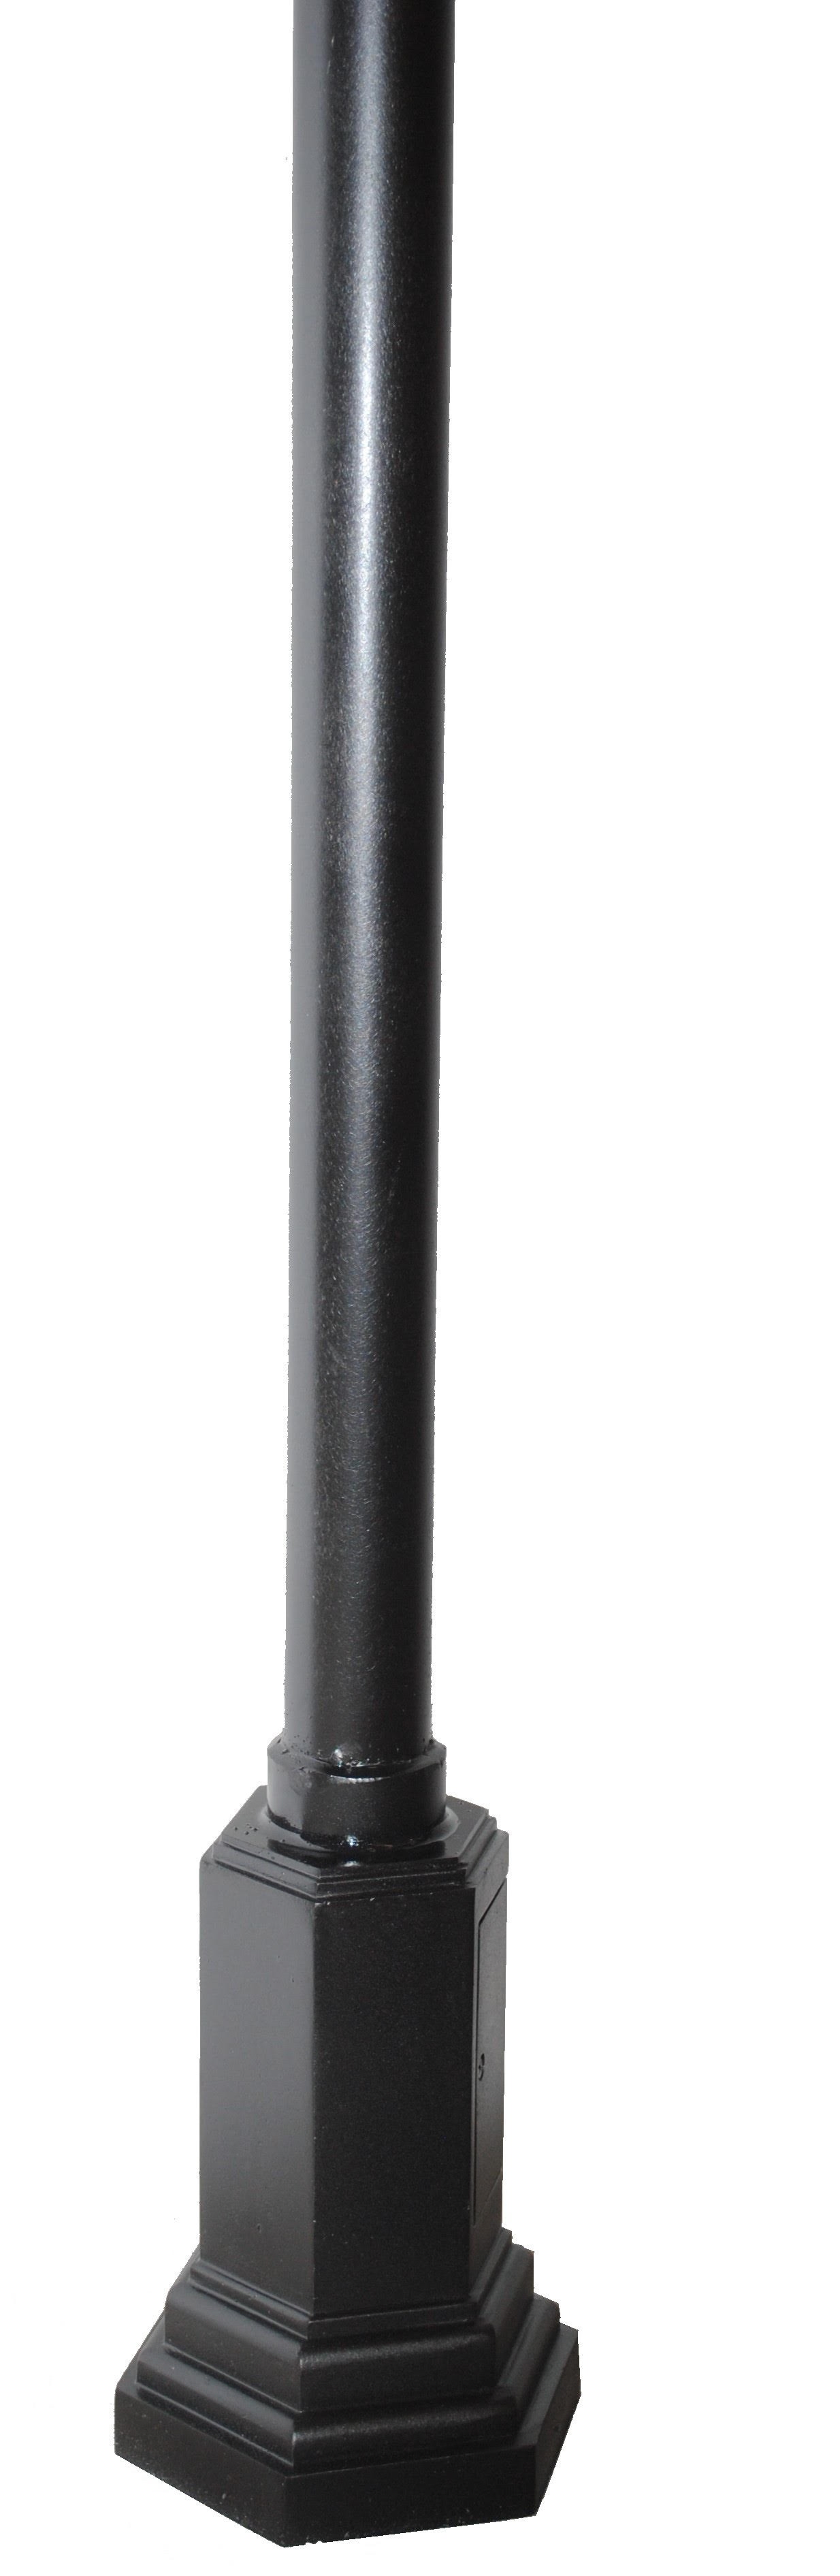 ZL-400 Commercial Grade Surface Mount Cast Aluminum Pole